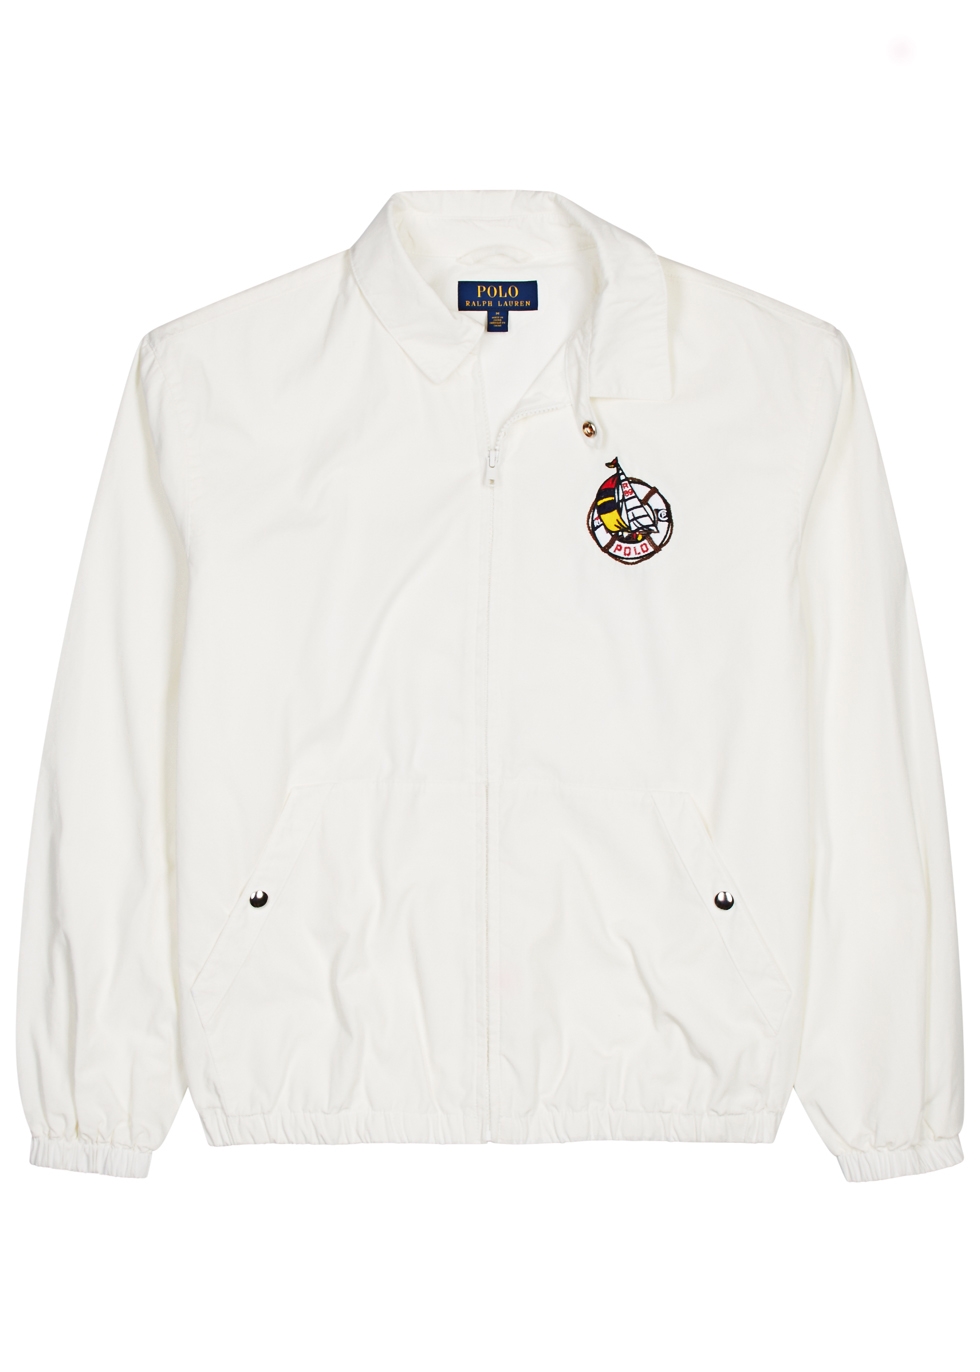 White embroidered cotton jacket White embroidered cotton jacket. Polo Ralph  Lauren. White embroidered cotton jacket